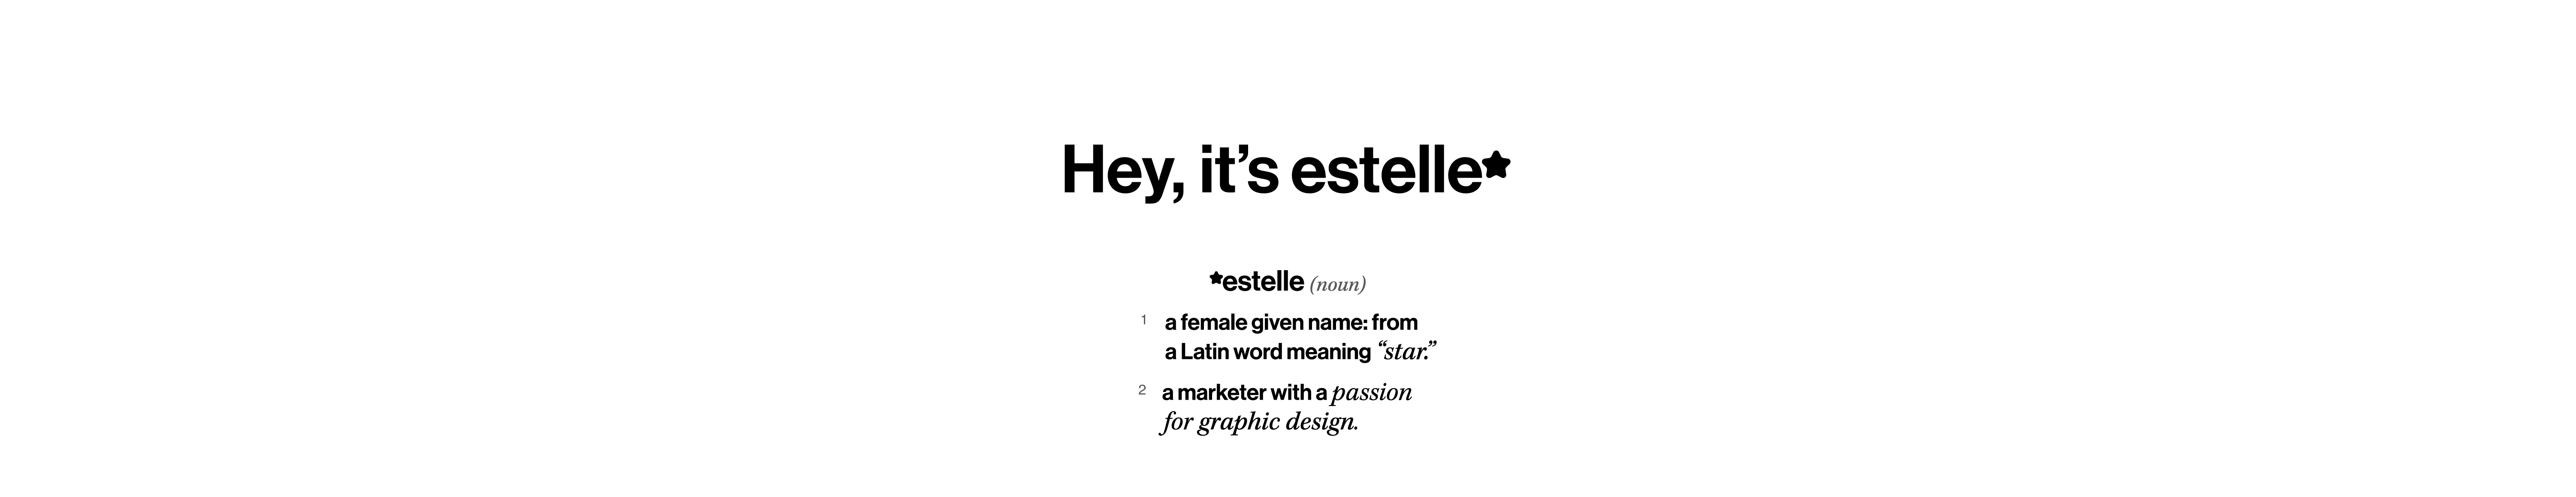 estelle battaglia's profile banner